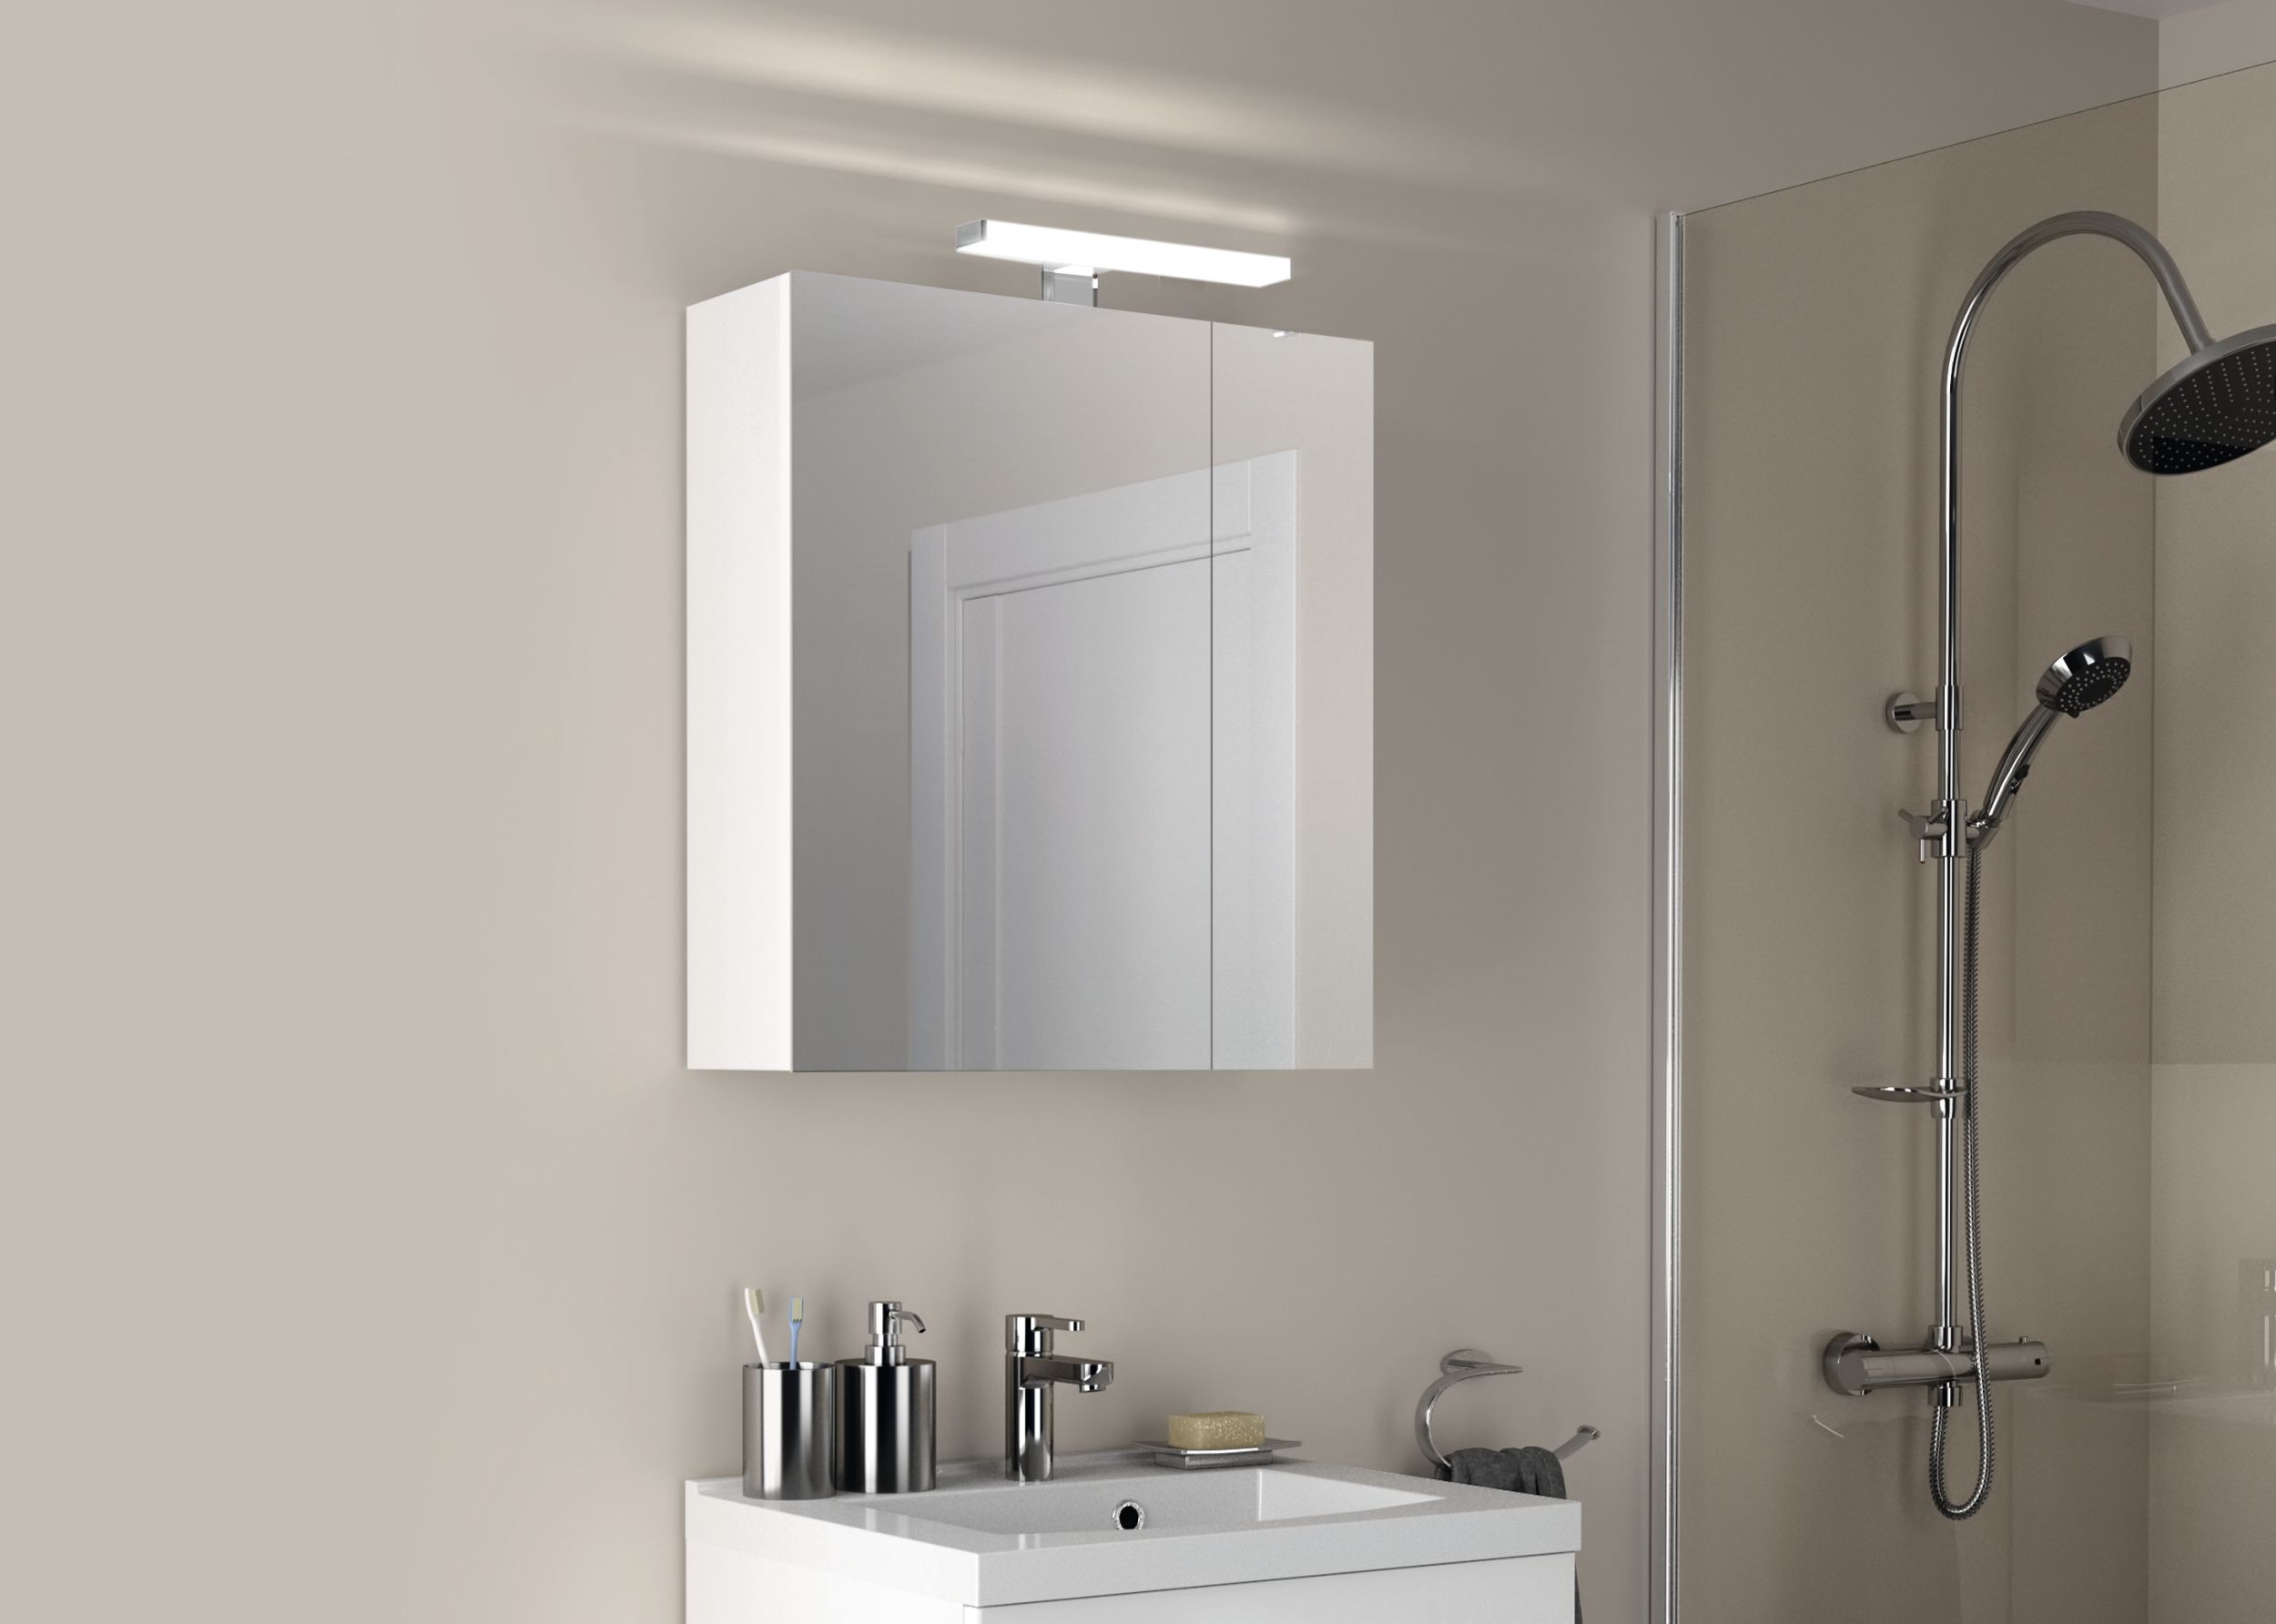  Illuminated bathroom cabinet 60 cm